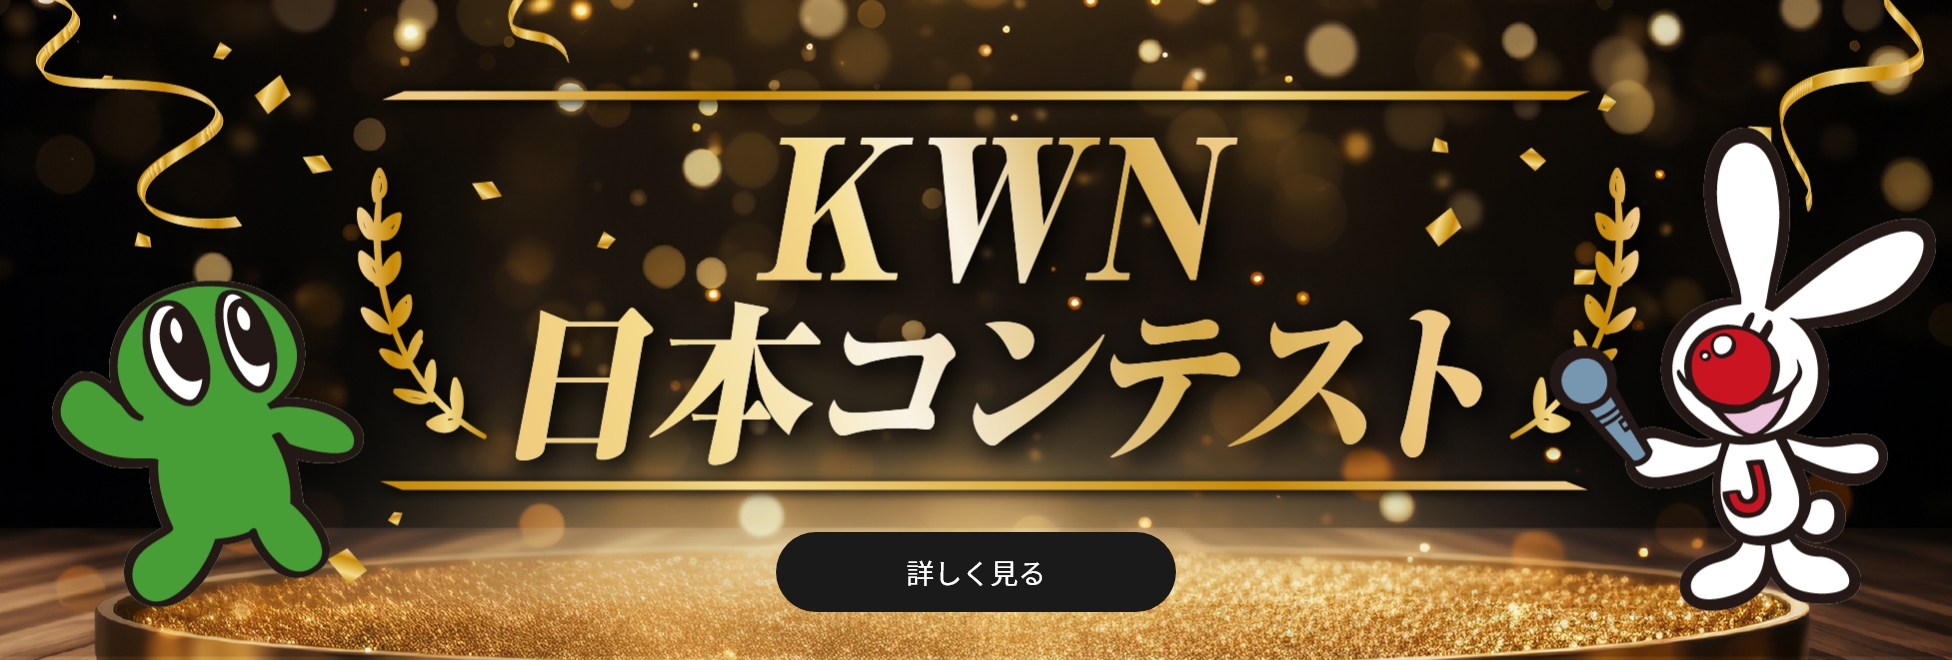 KWN 日本コンテスト